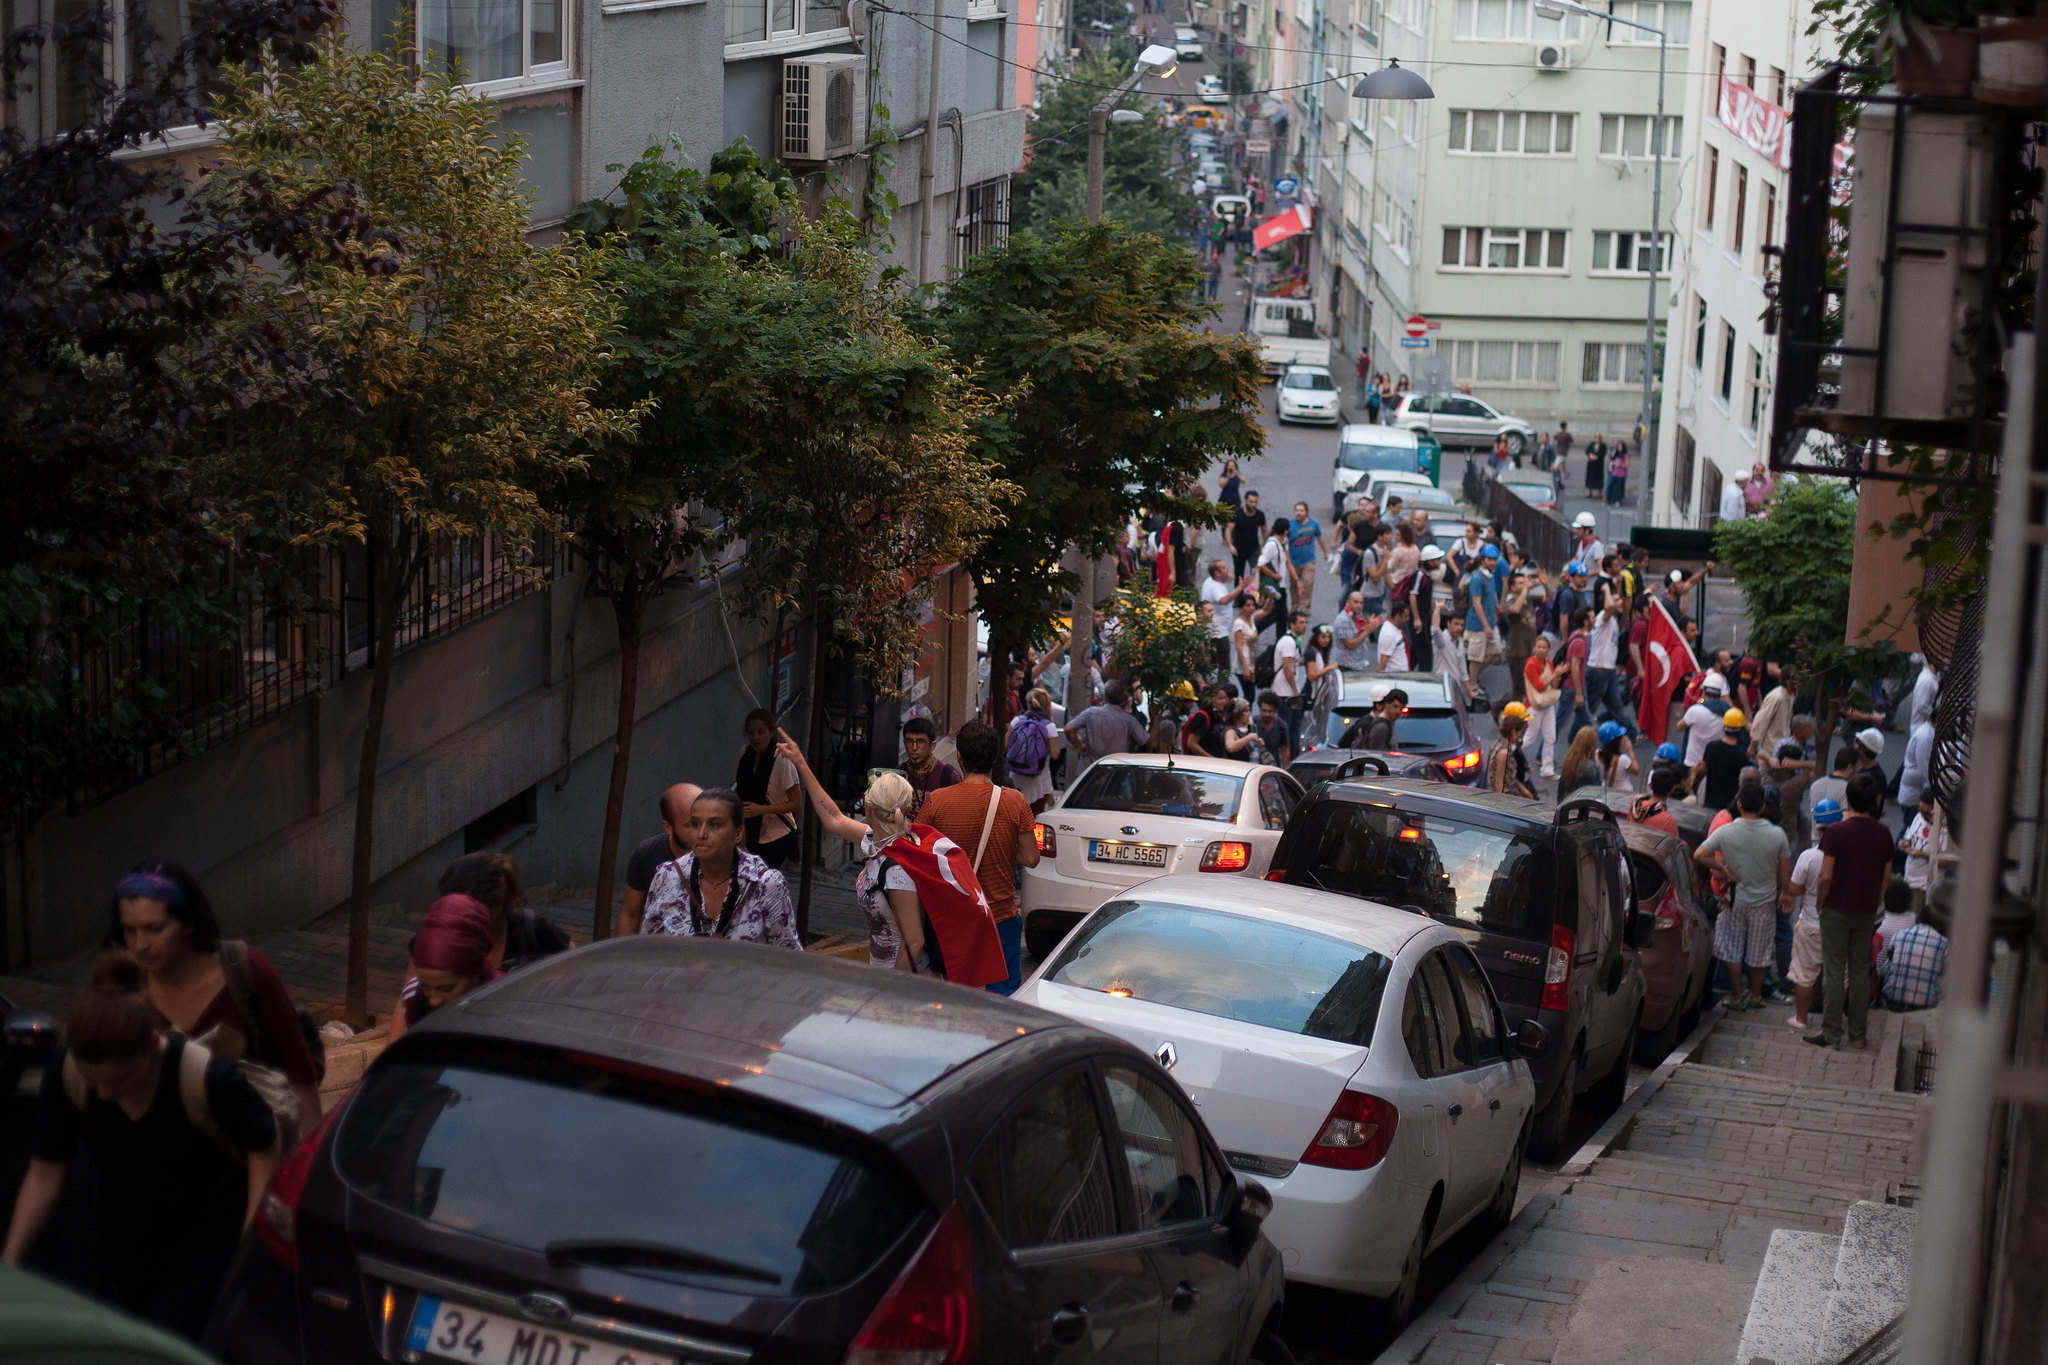 Crowds on their way to Taksim.